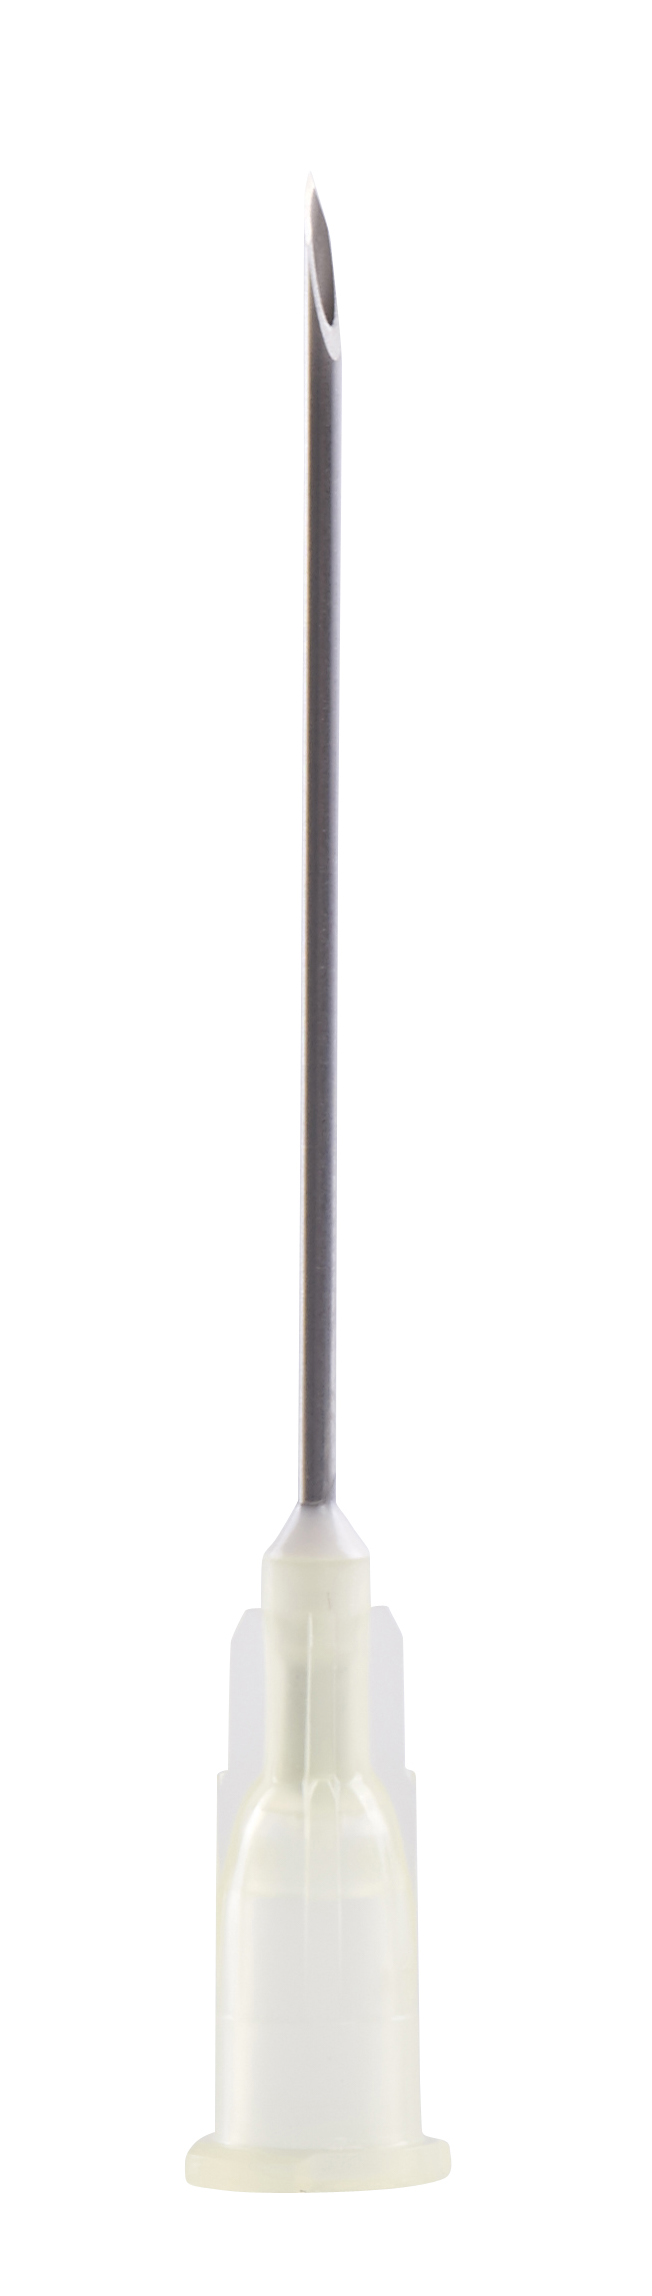 KRUUSE disposable needle 1.1x40mm 19gx1½, white 100/pk